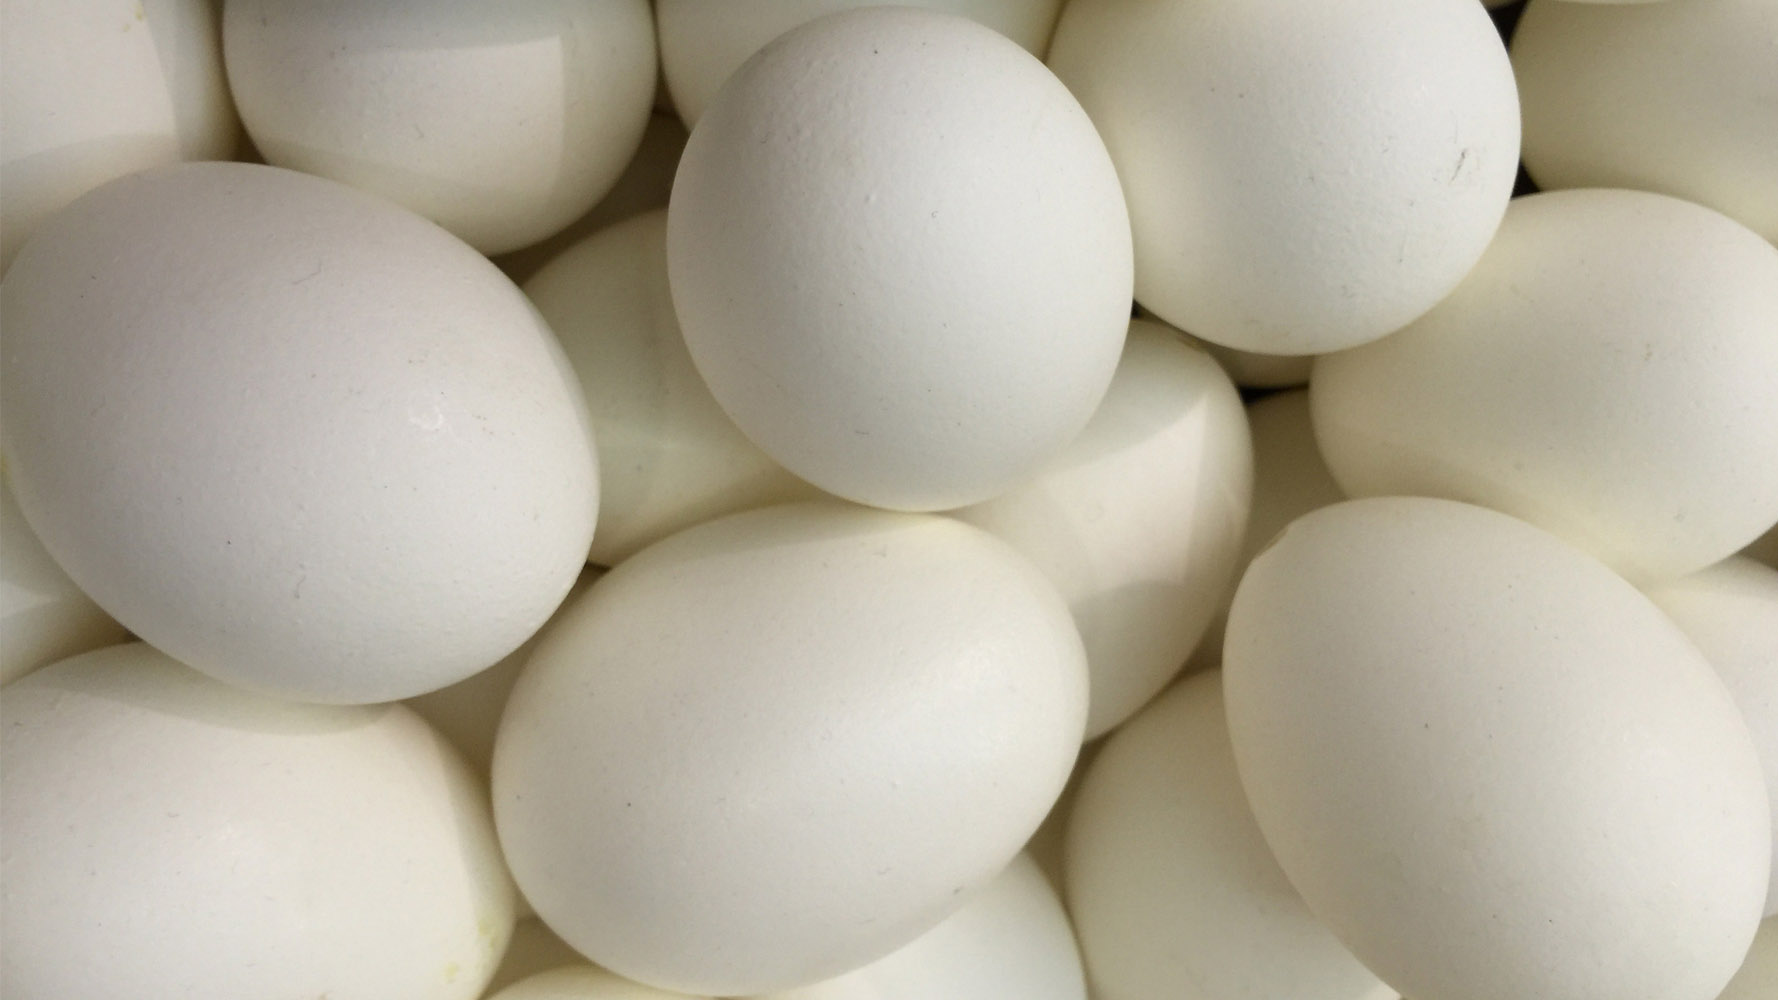 Kaz yumurtası fiyatları,Kaz yumurtası piyasası, Kaz yumurtası resmi